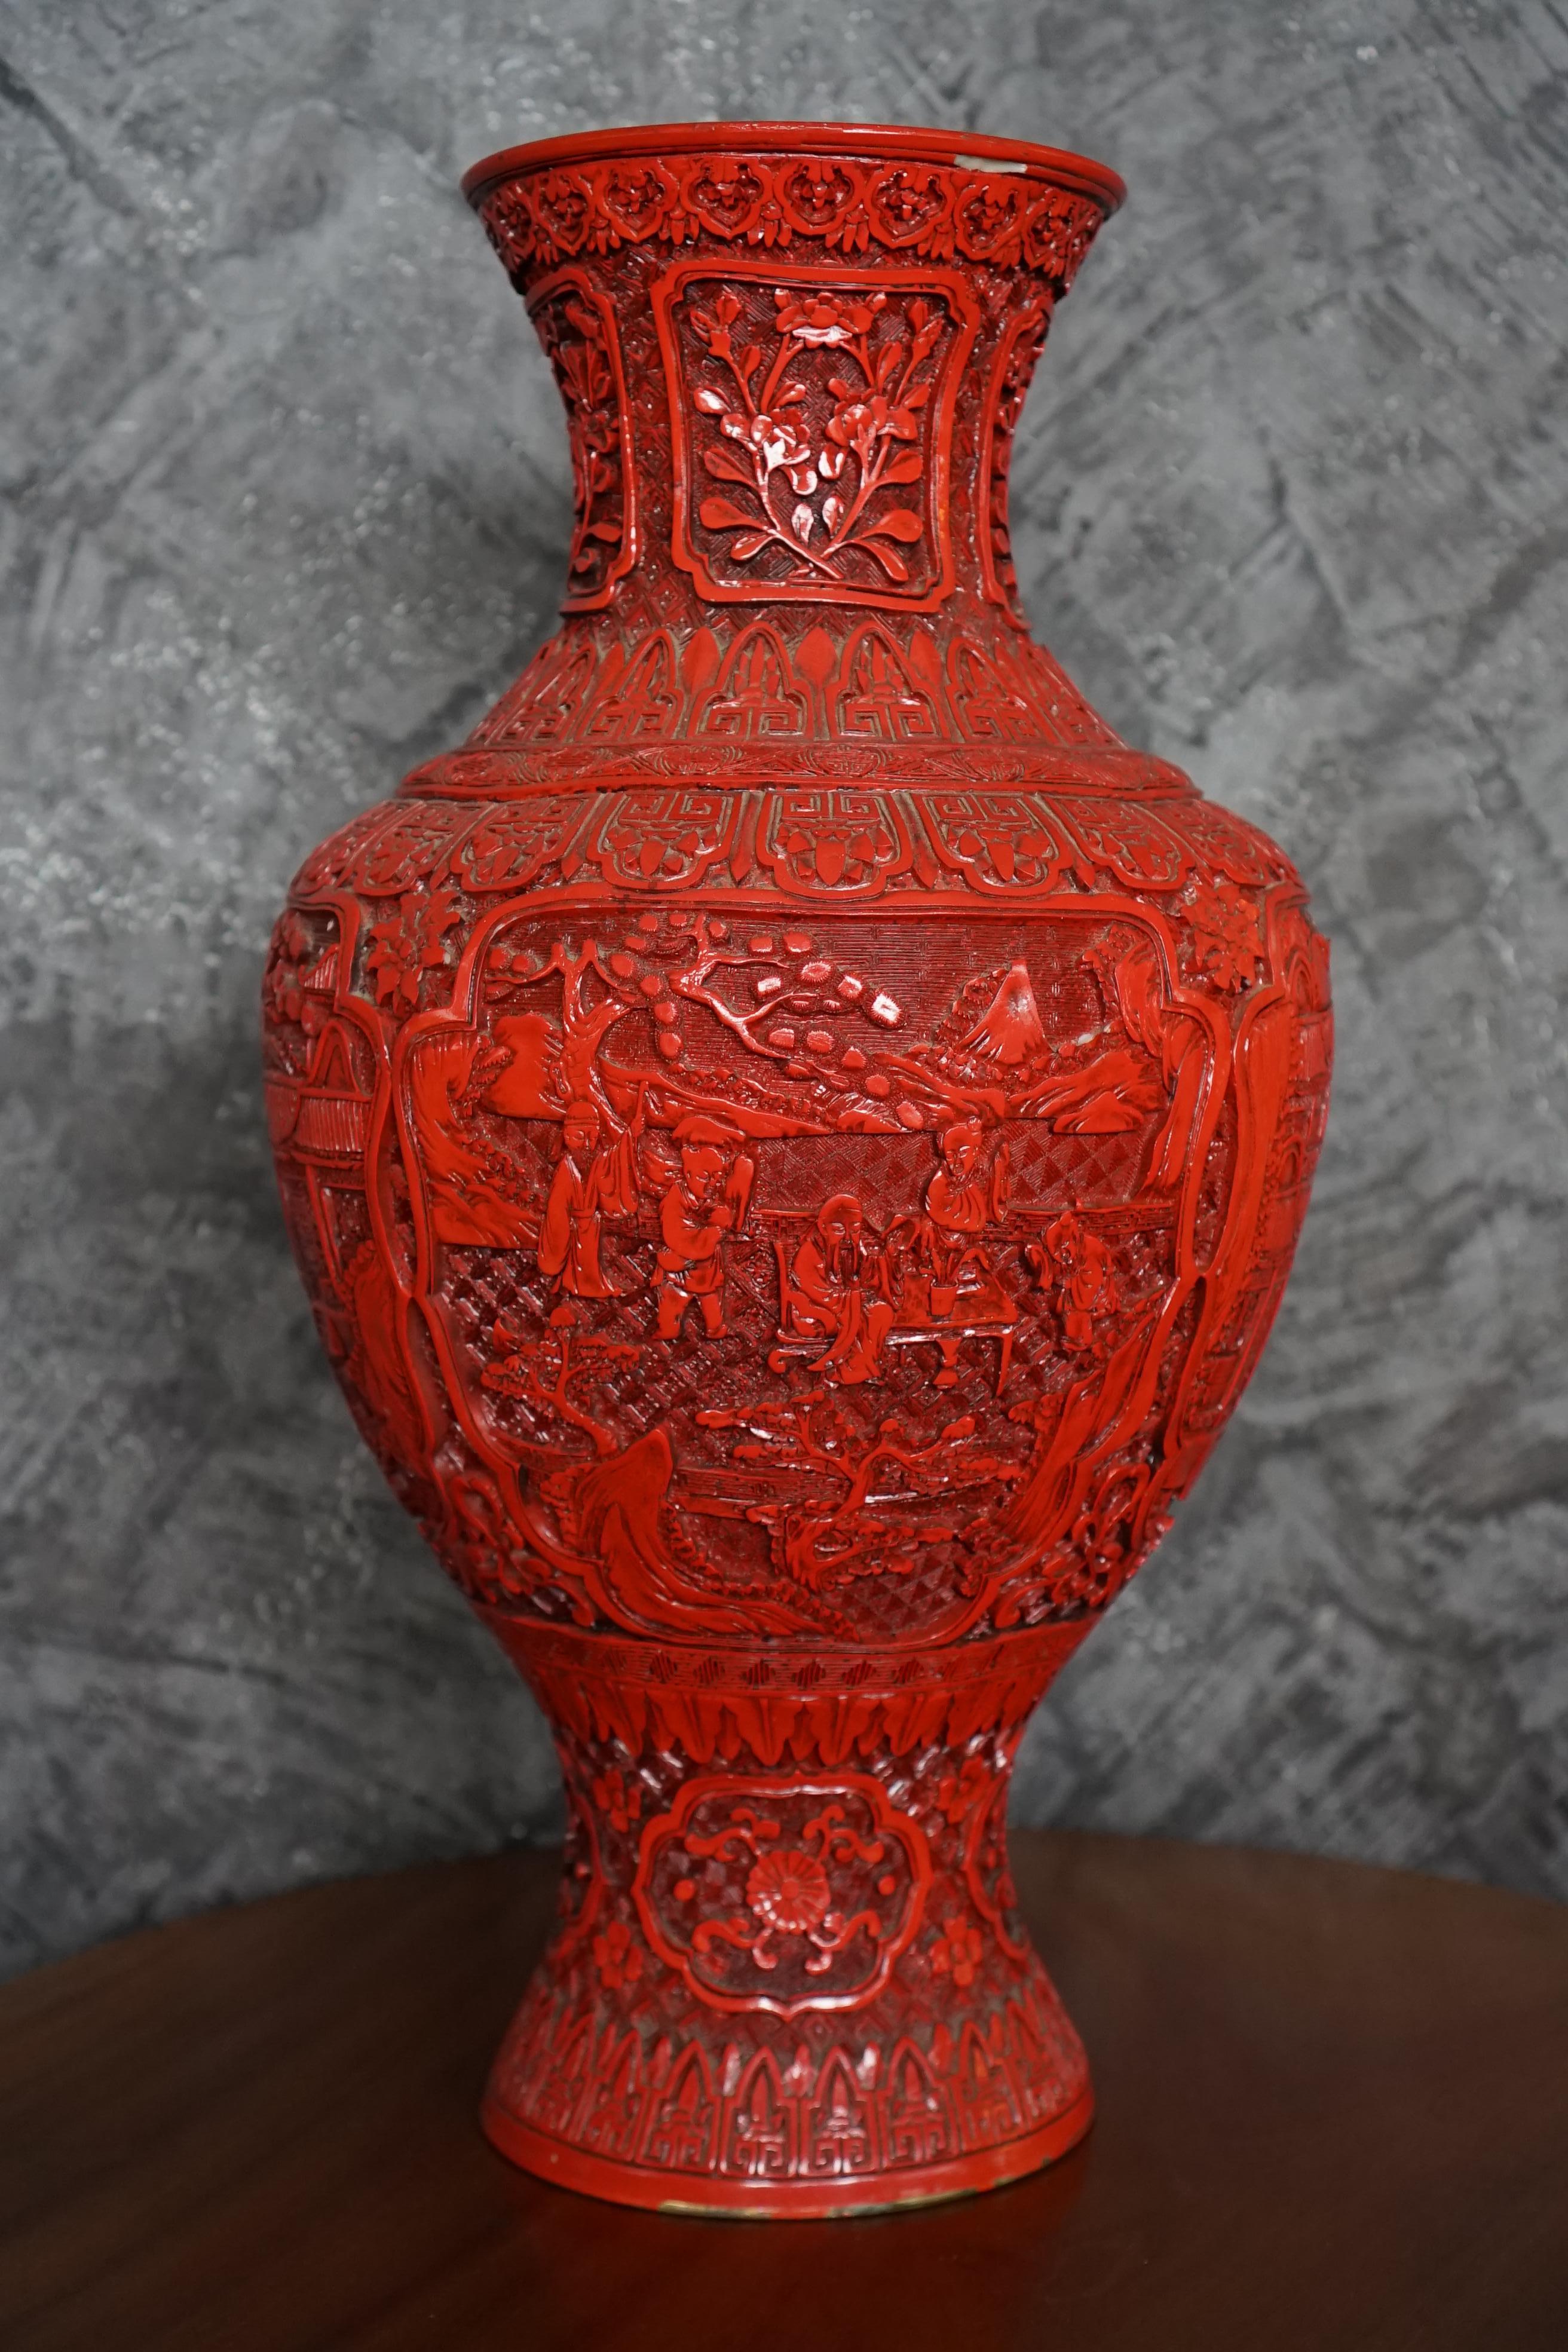 Dieses Paar großer zinnoberfarben lackierter chinesischer Vasen ist ein großartiges Beispiel für traditionelle chinesische Handwerkskunst. Die Vasen haben eine beeindruckende Höhe und zeichnen sich durch einen auffälligen Kontrast zwischen weißem